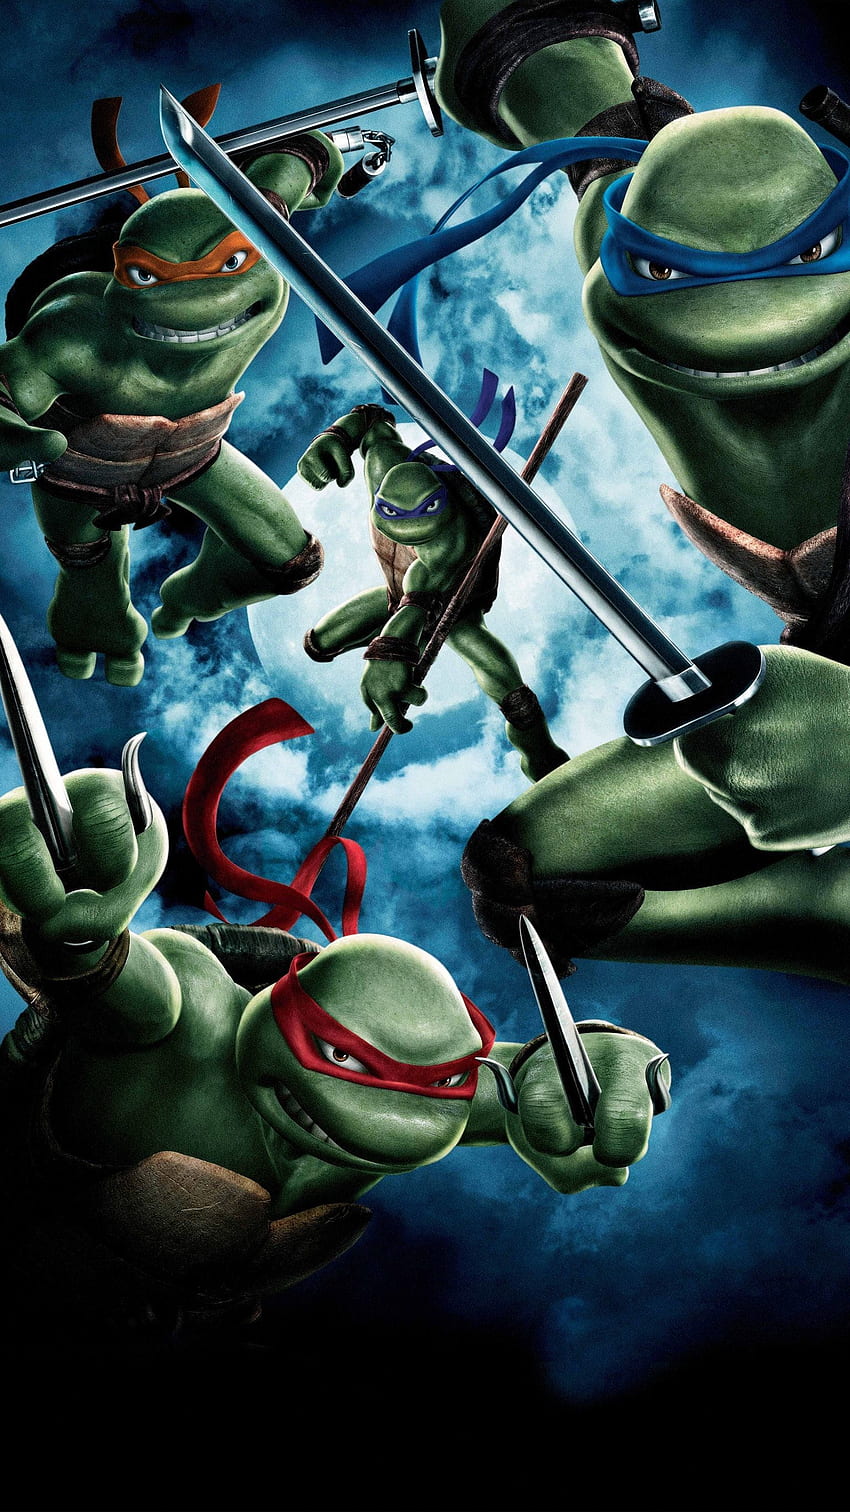 TMNT Leonardo Cute  Dangerous iPhone 5 wallpaper  Tmnt Ninja turtles  art Teenage mutant ninja turtles artwork